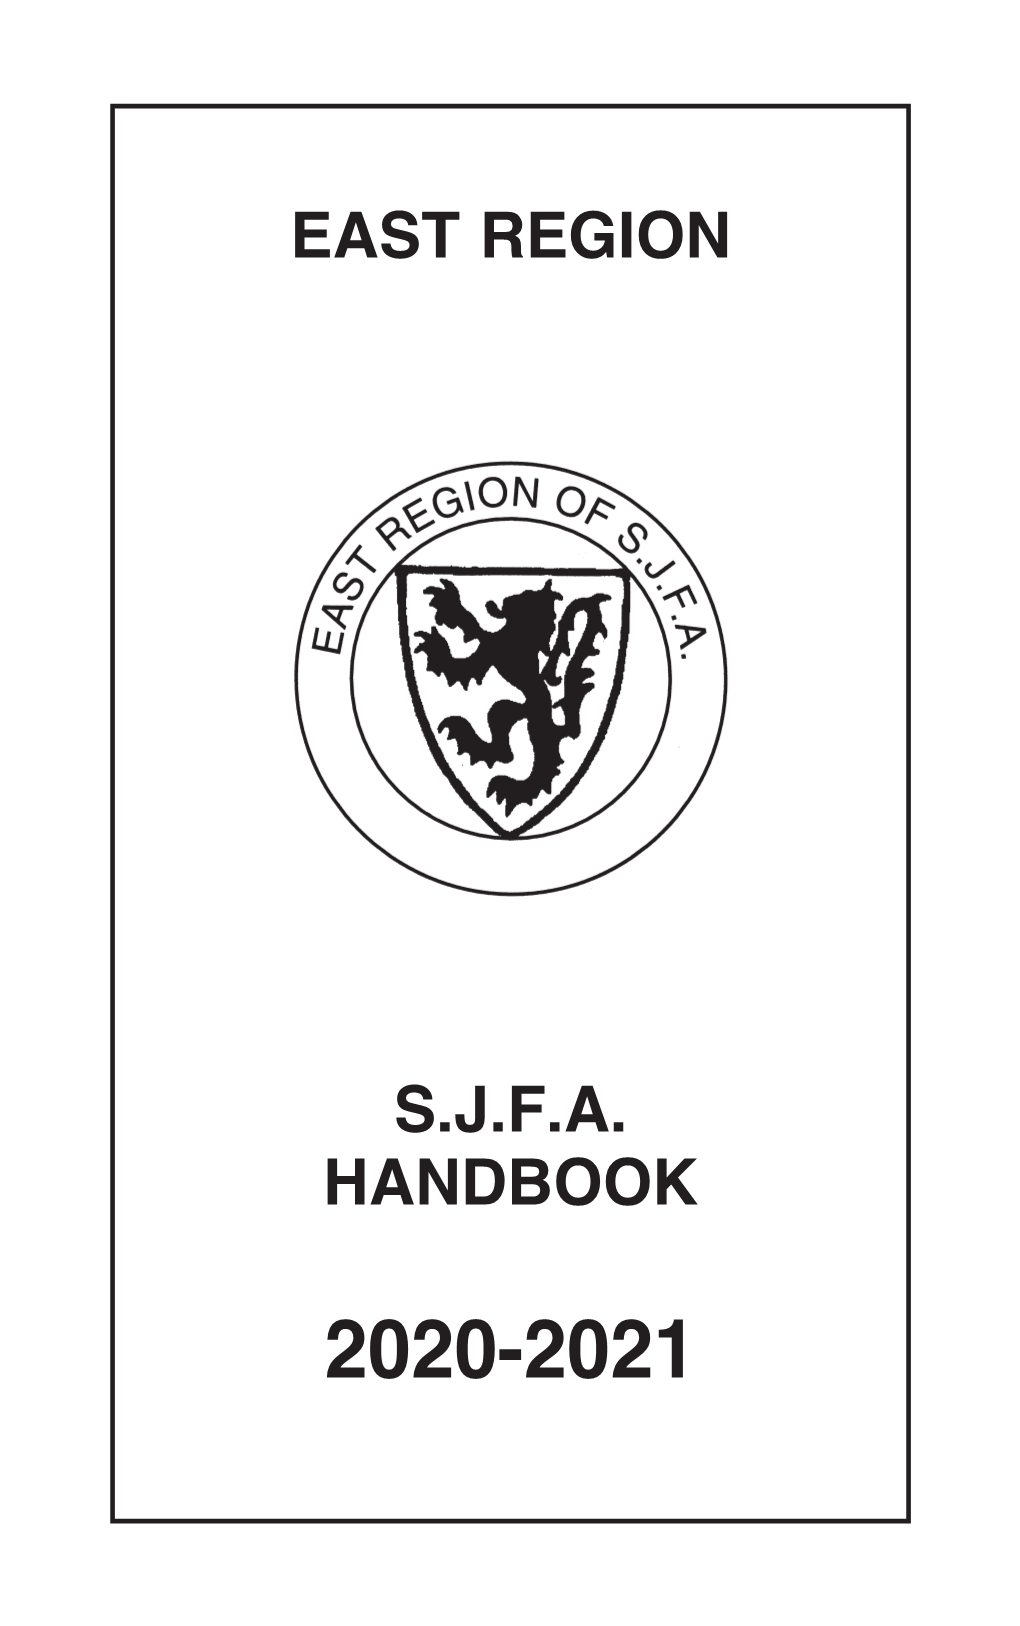 East Region S.J.F.A. Handbook